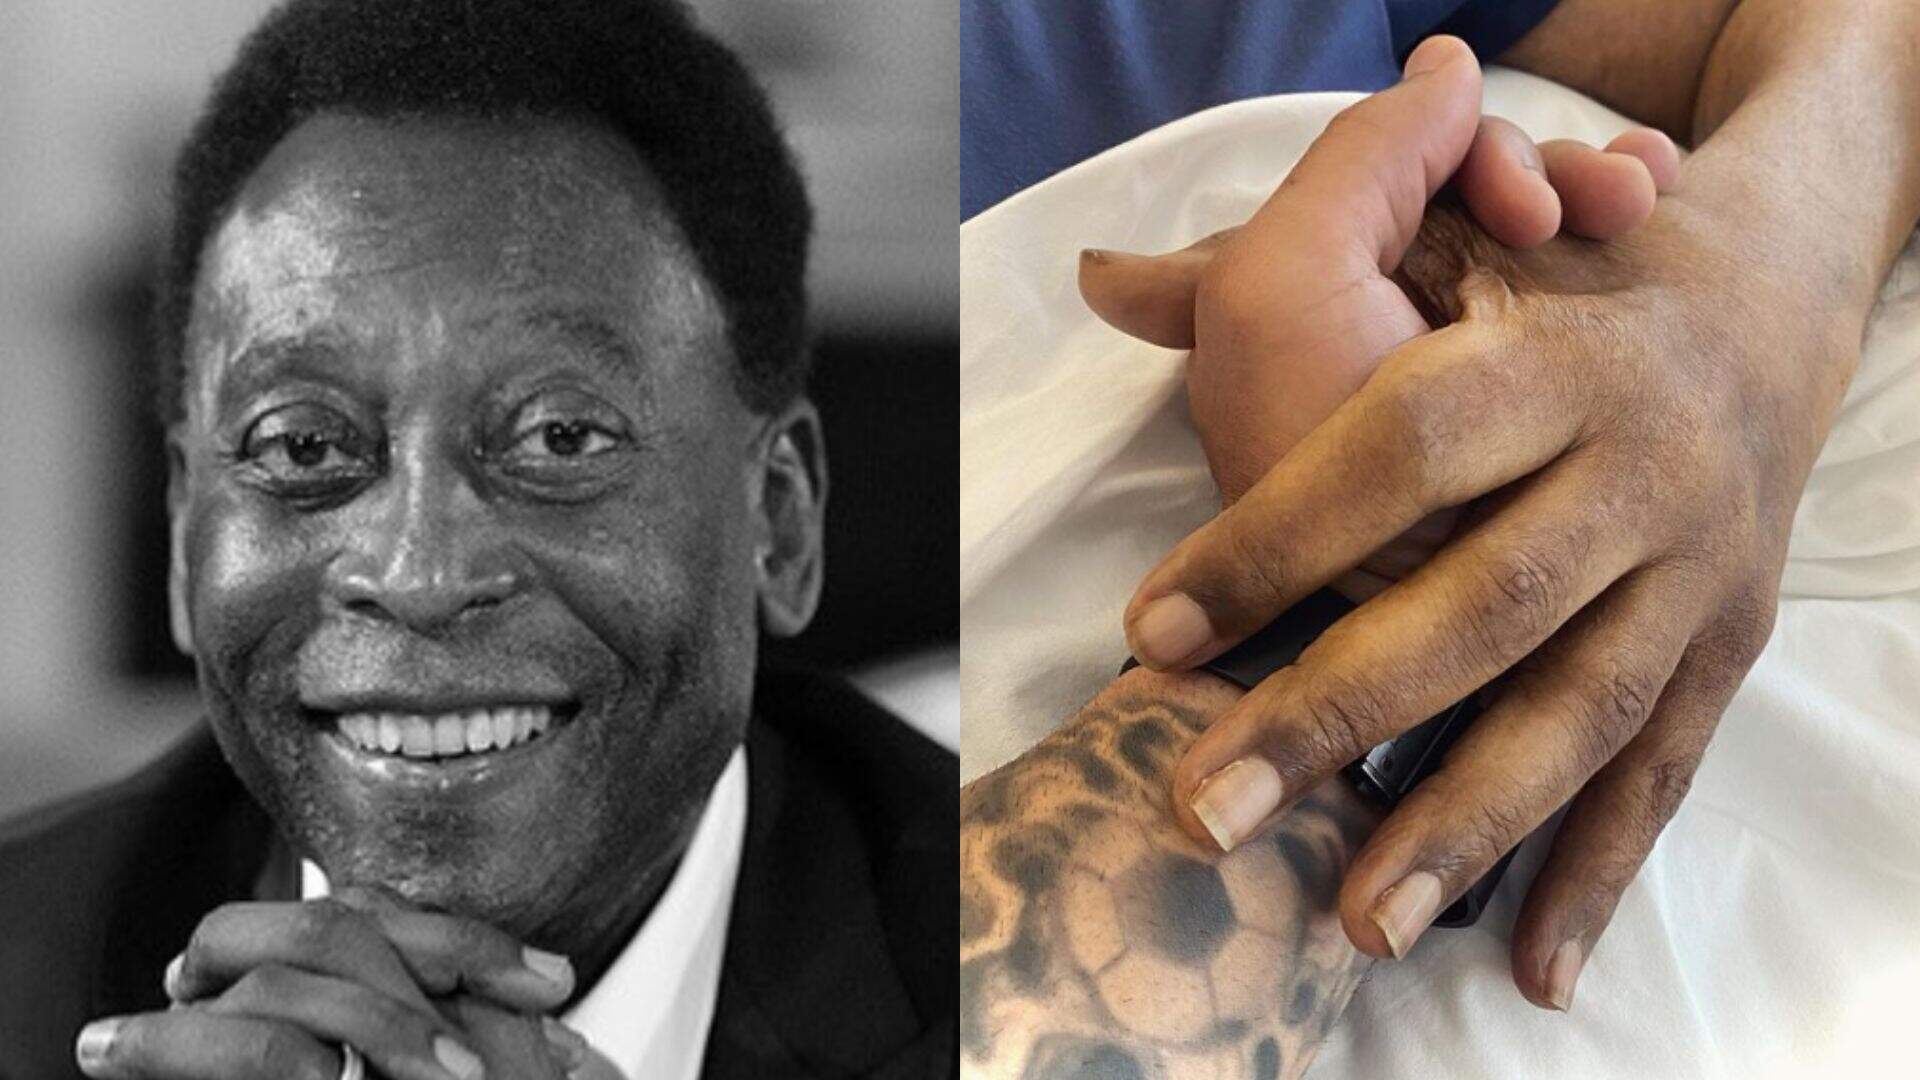 Segurando a mão de Pelé em foto, filho do ex-atleta se pronuncia e declaração comove fãs - Metropolitana FM